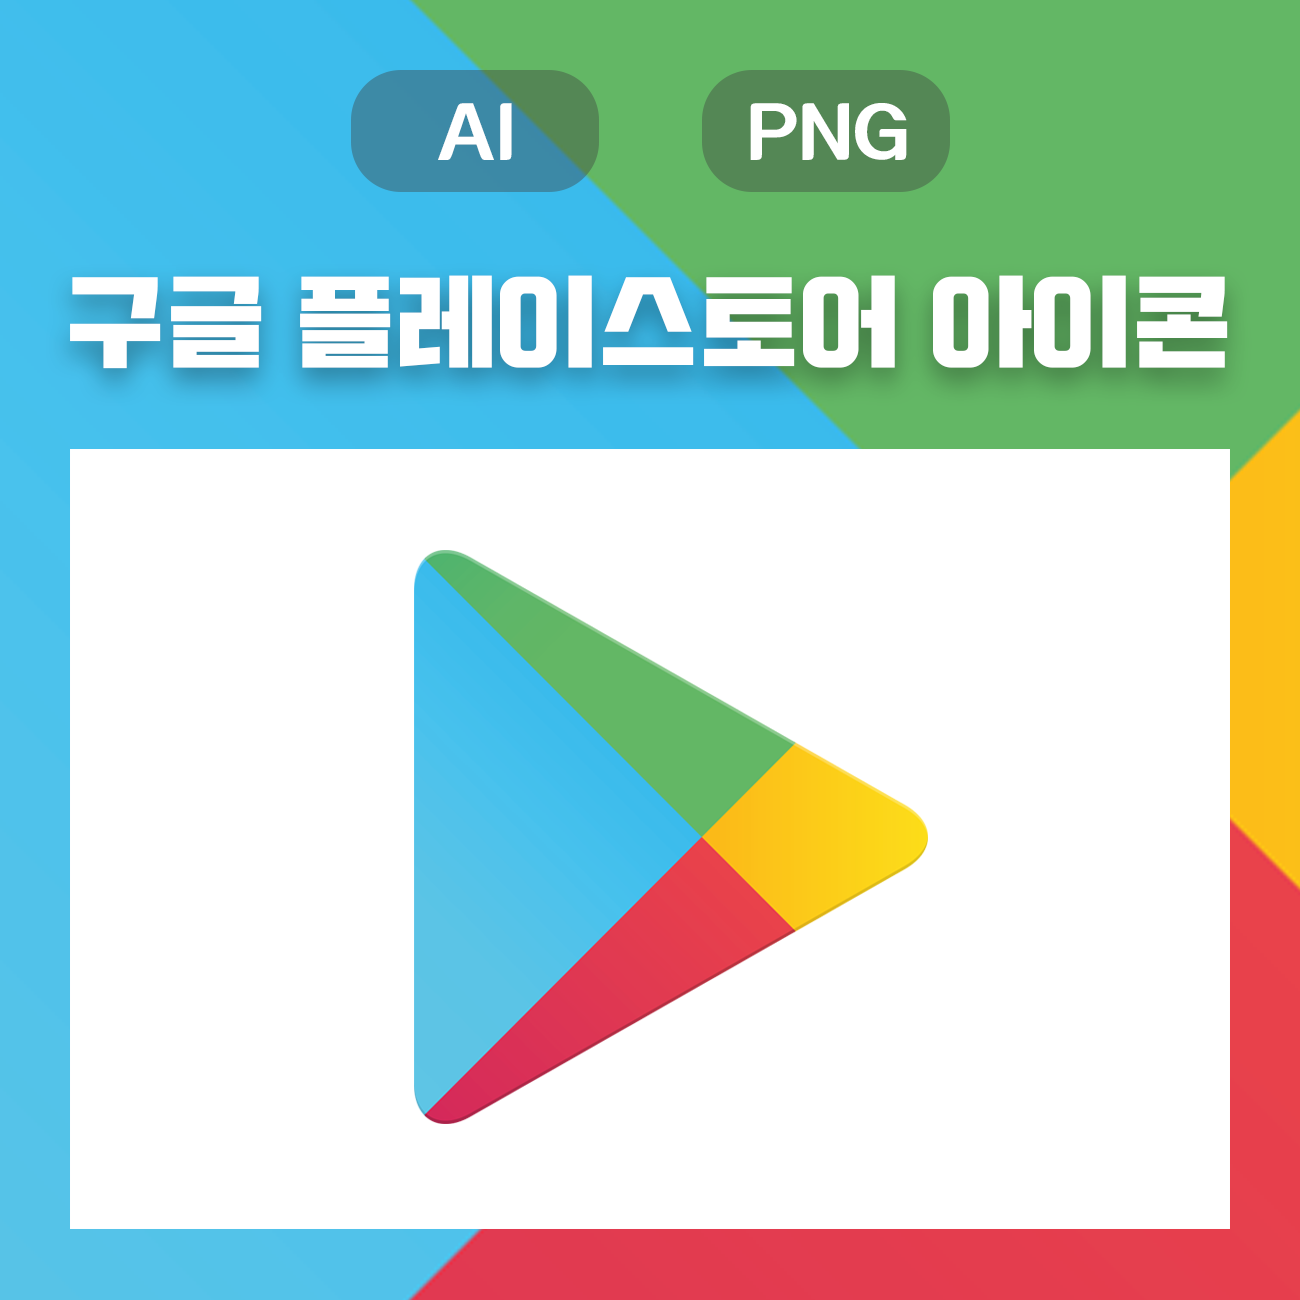 웅디자인) 구글 플레이스토어 아이콘 원클릭 무료 다운로드(AI, PNG)